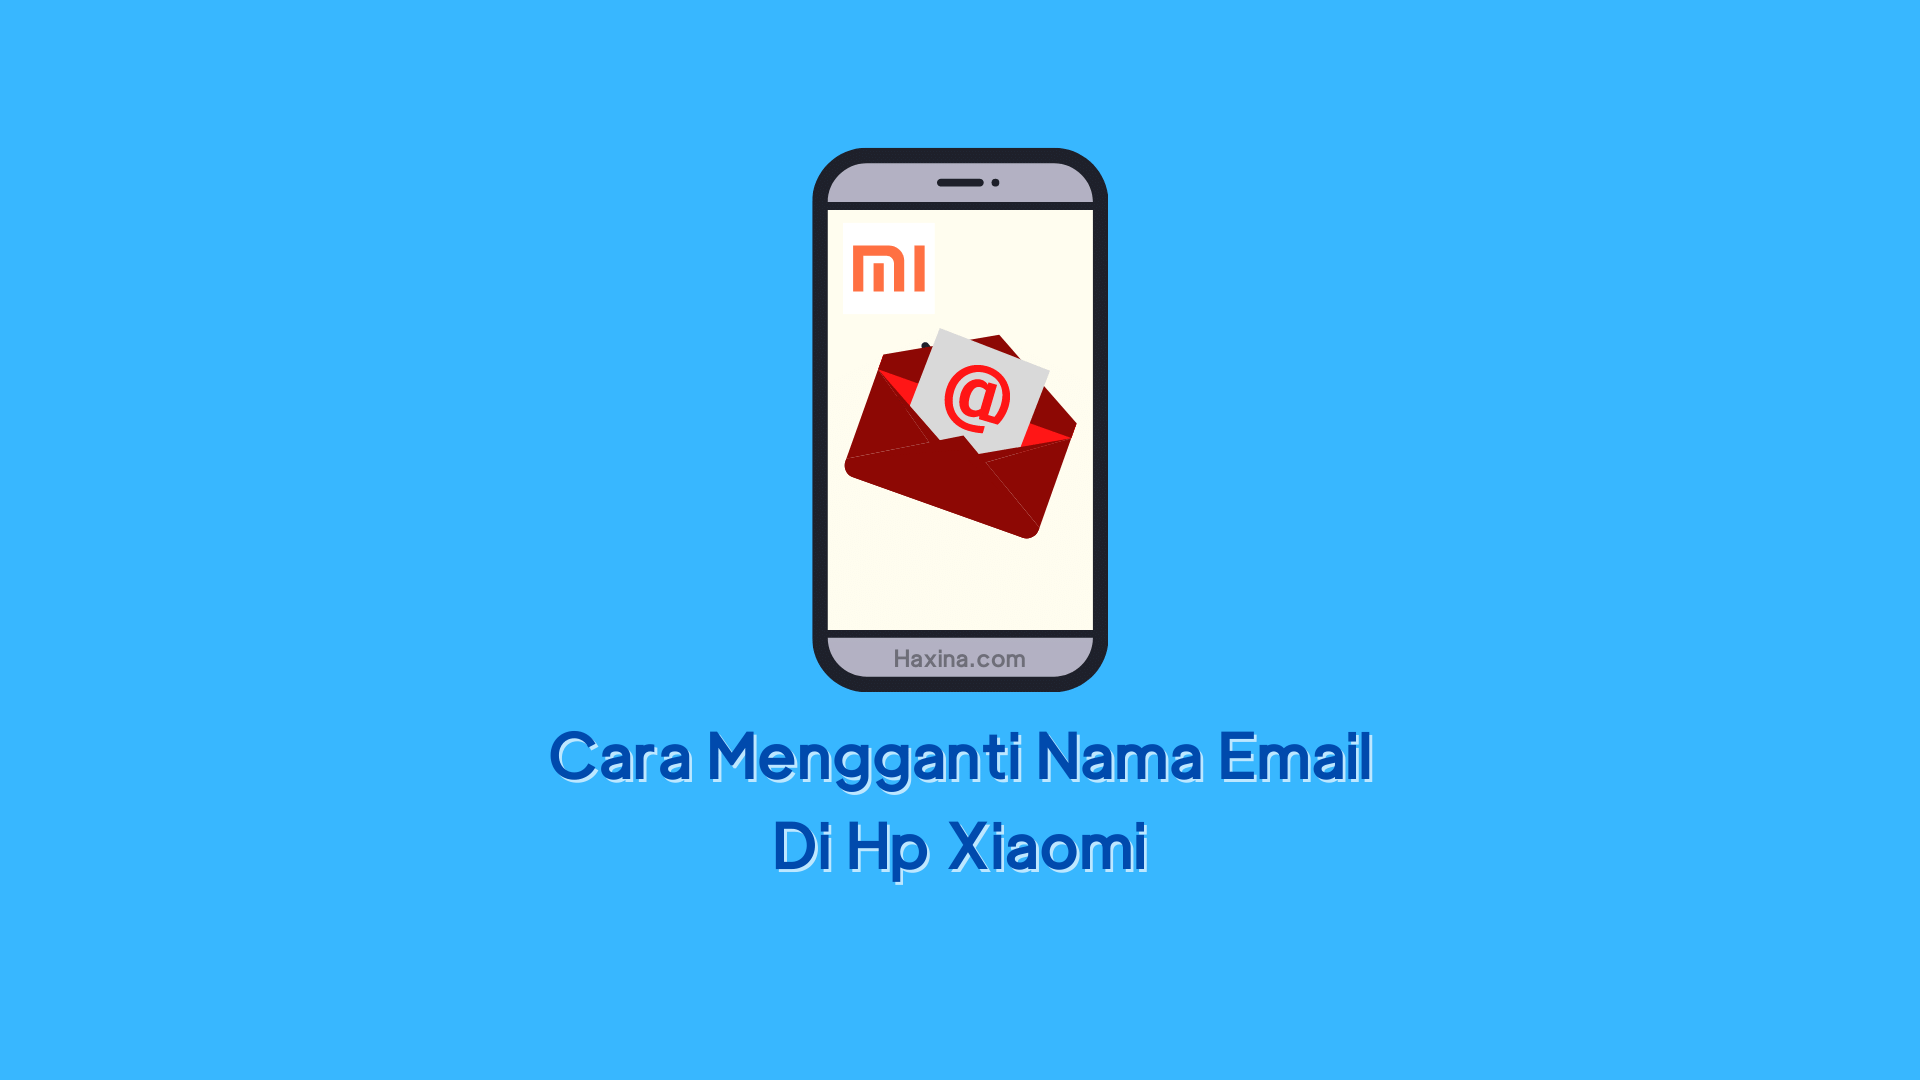 Cara Mengganti Nama Email Di Hp Xiaomi. Cara Mengganti Nama Email Di Hp Xiaomi dengan Mudah